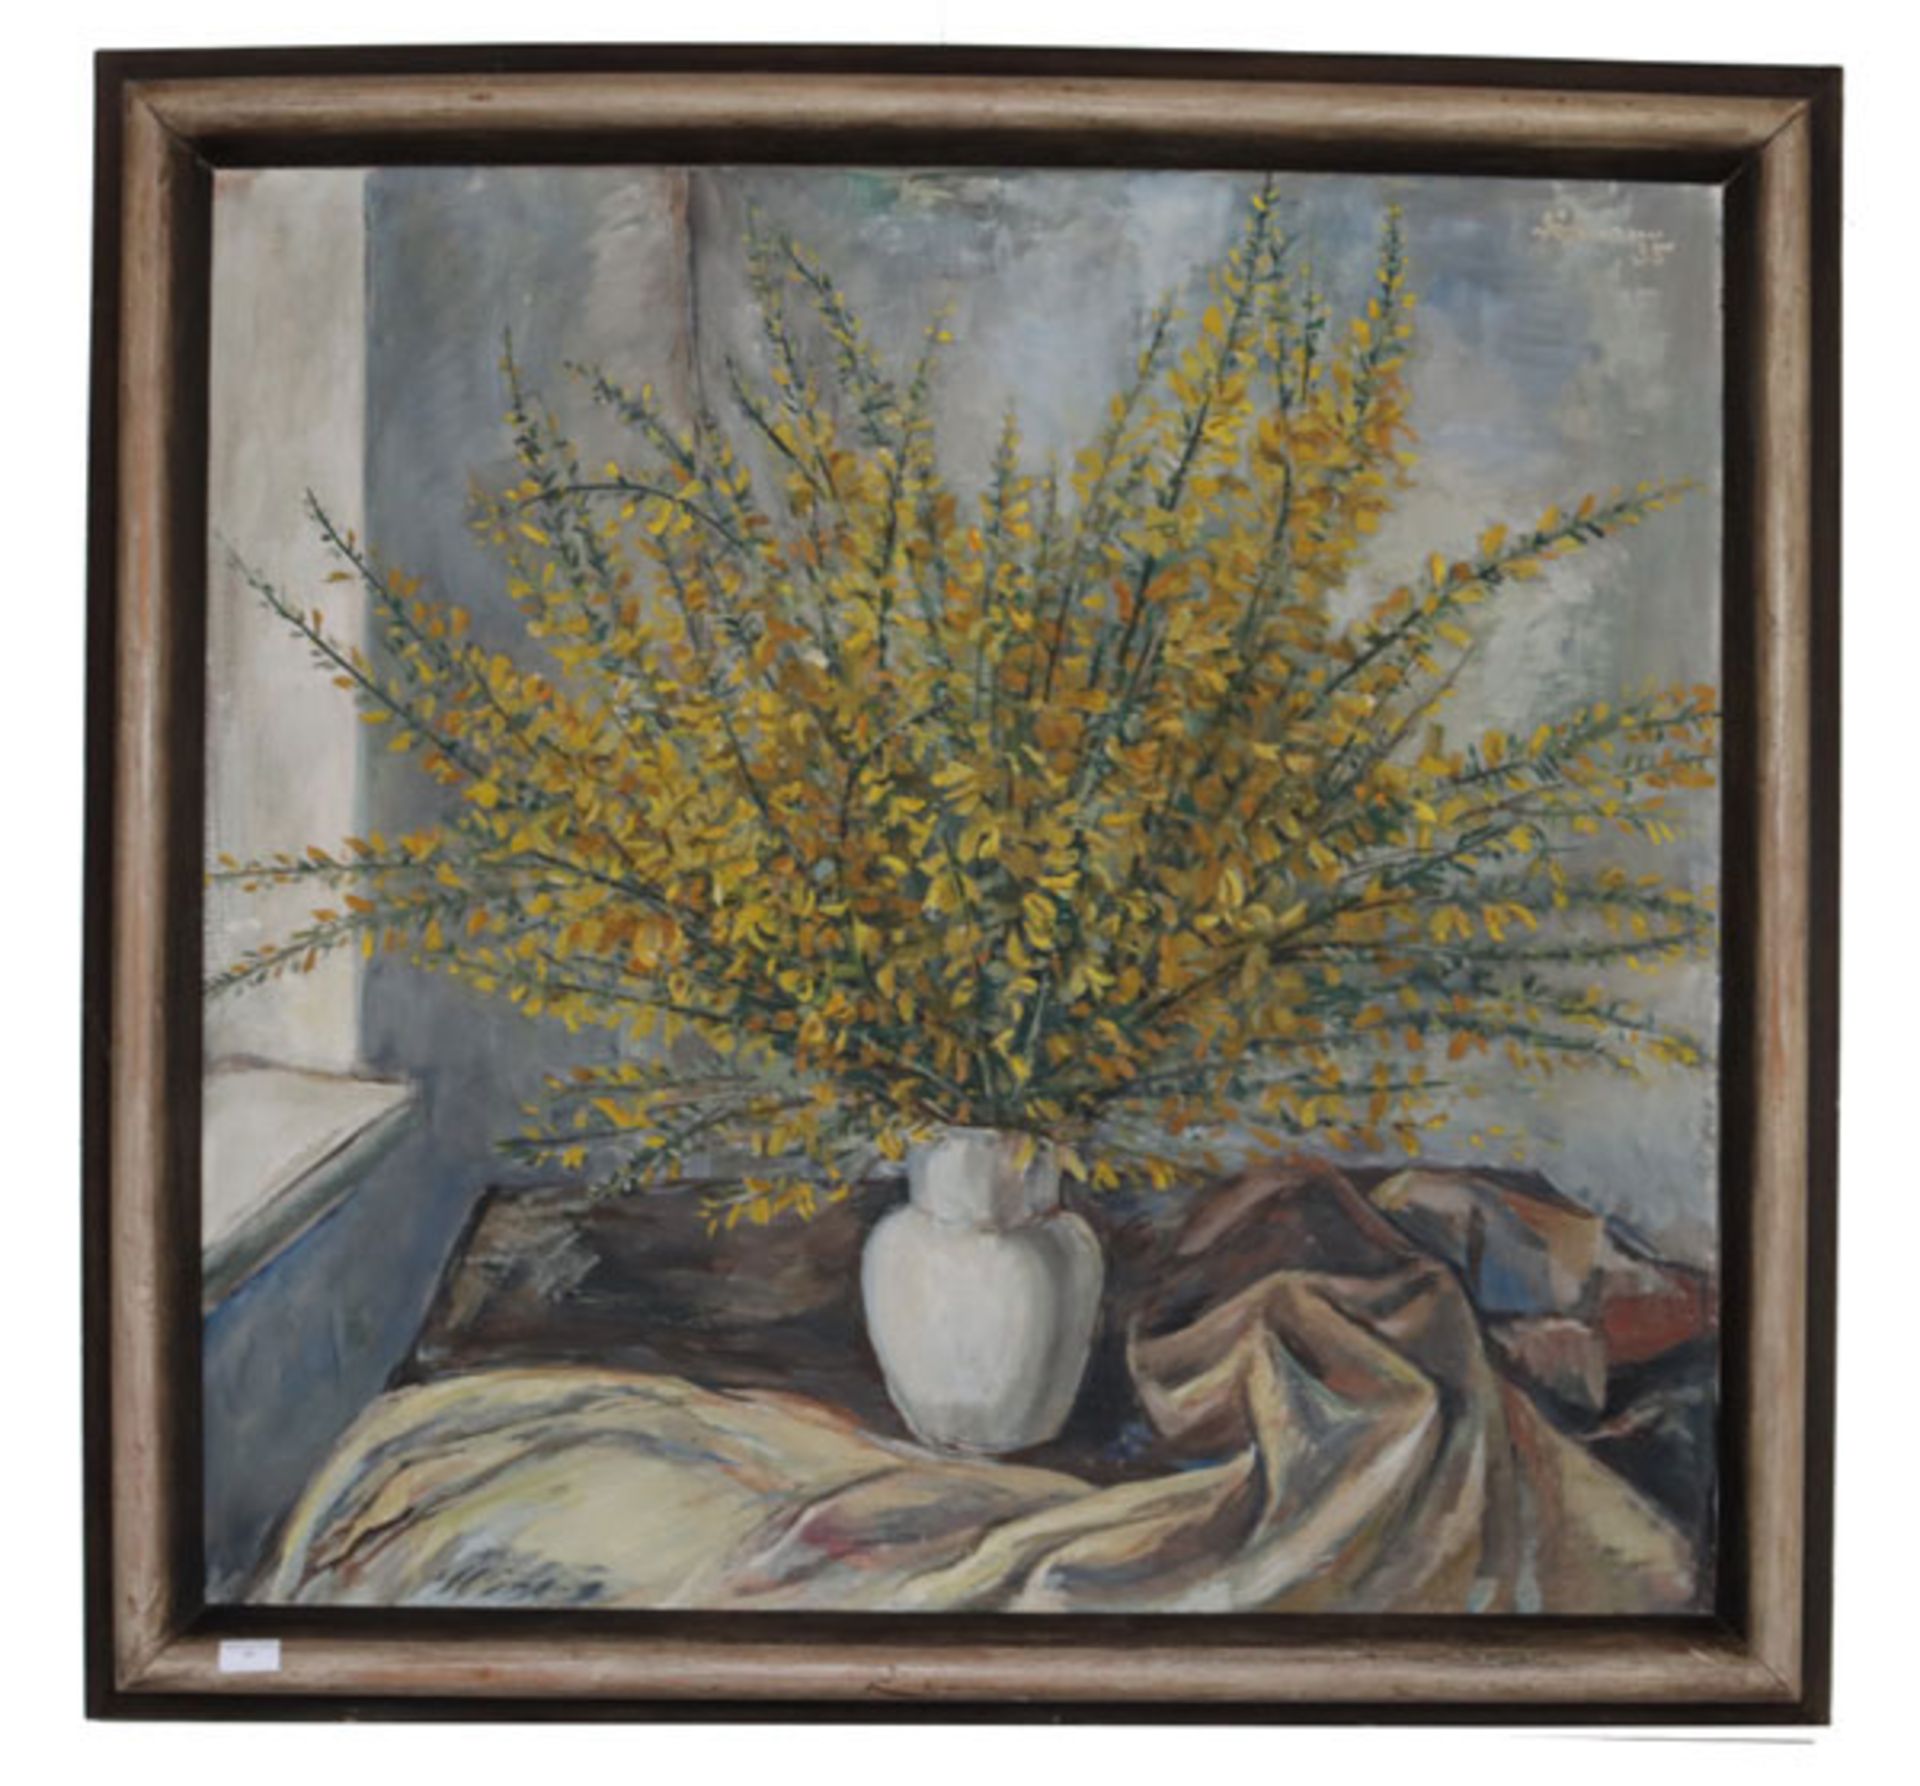 Gemälde ÖL/LW 'Ginster in Vase', undeutlich signiert, Bildoberfläche teils beschädigt, gerahmt,